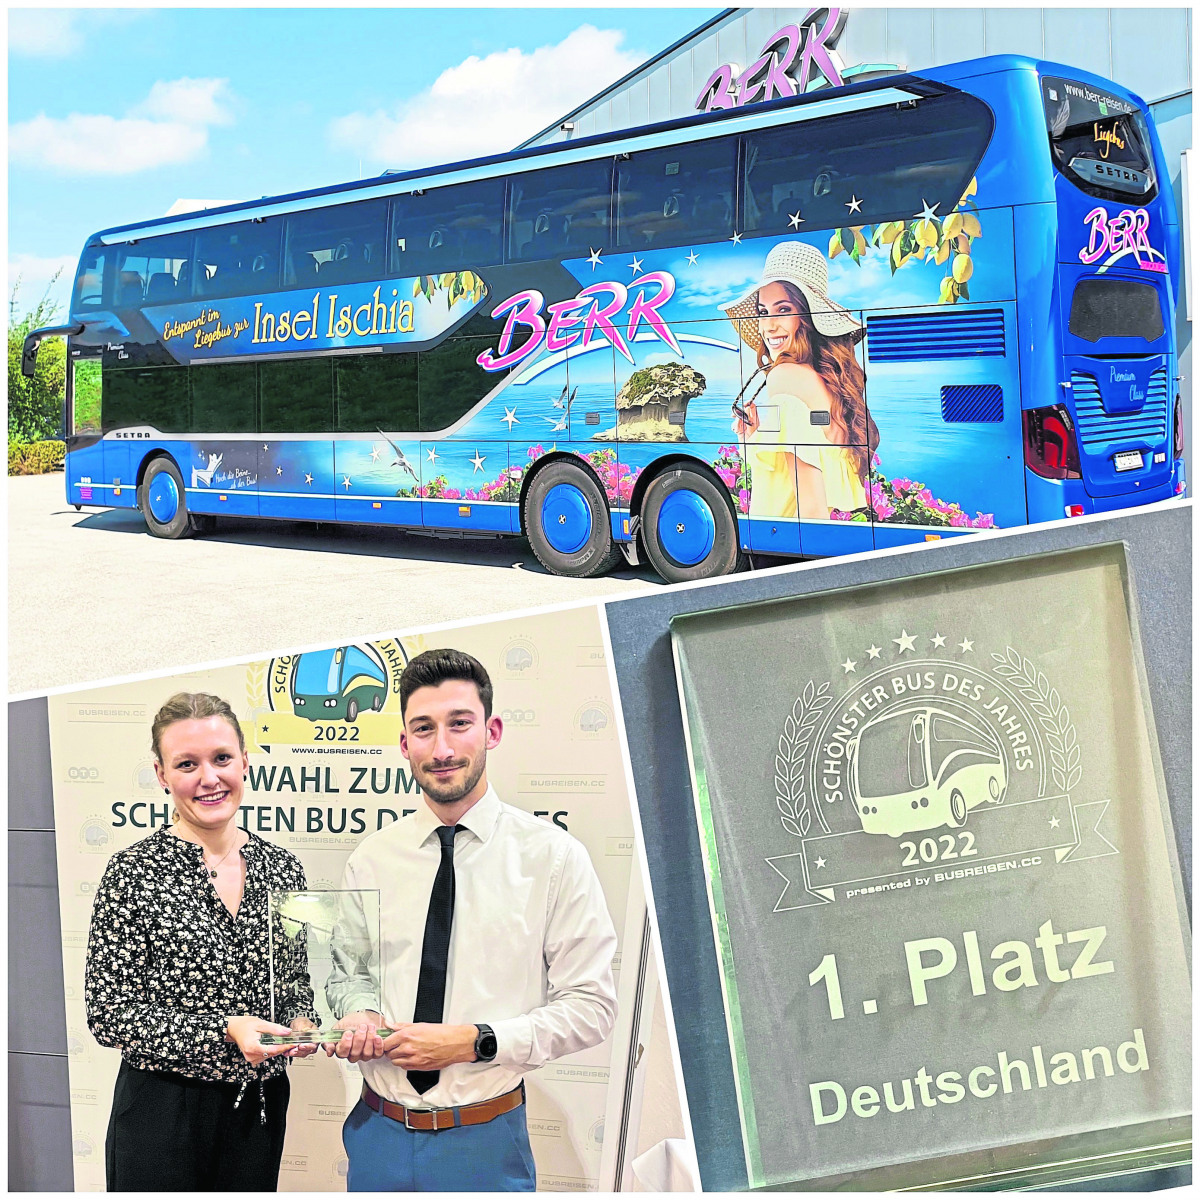 Verreisen im schönsten Bus Deutschlands!